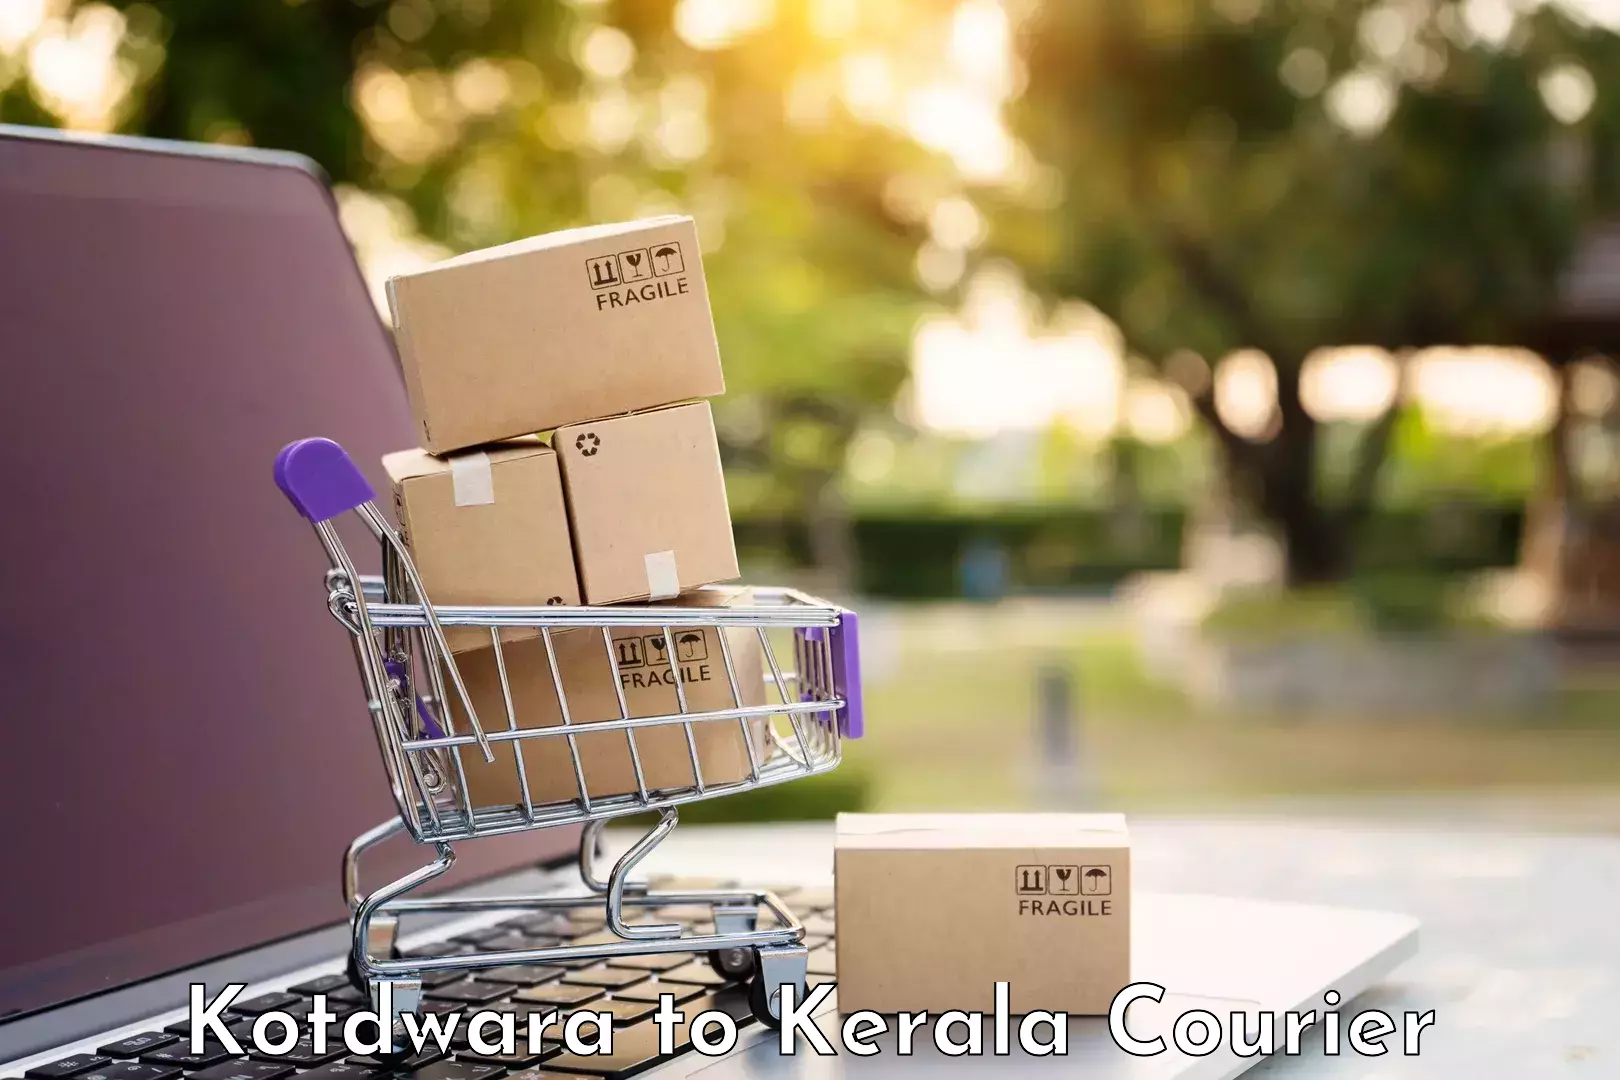 Baggage transport innovation Kotdwara to Kerala